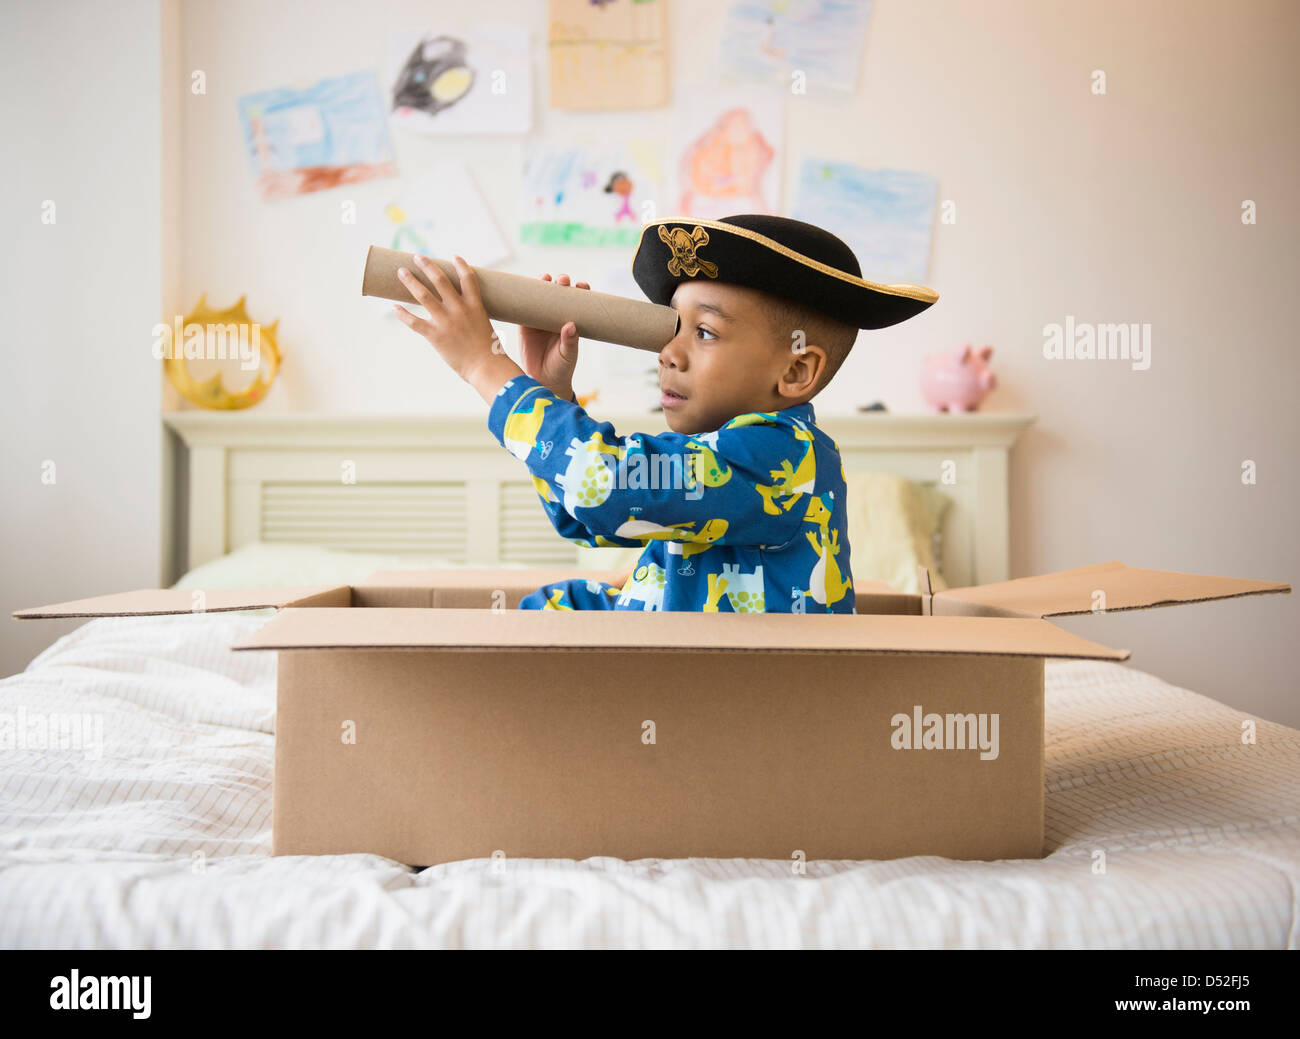 African American boy jugando en caja de cartón Foto de stock